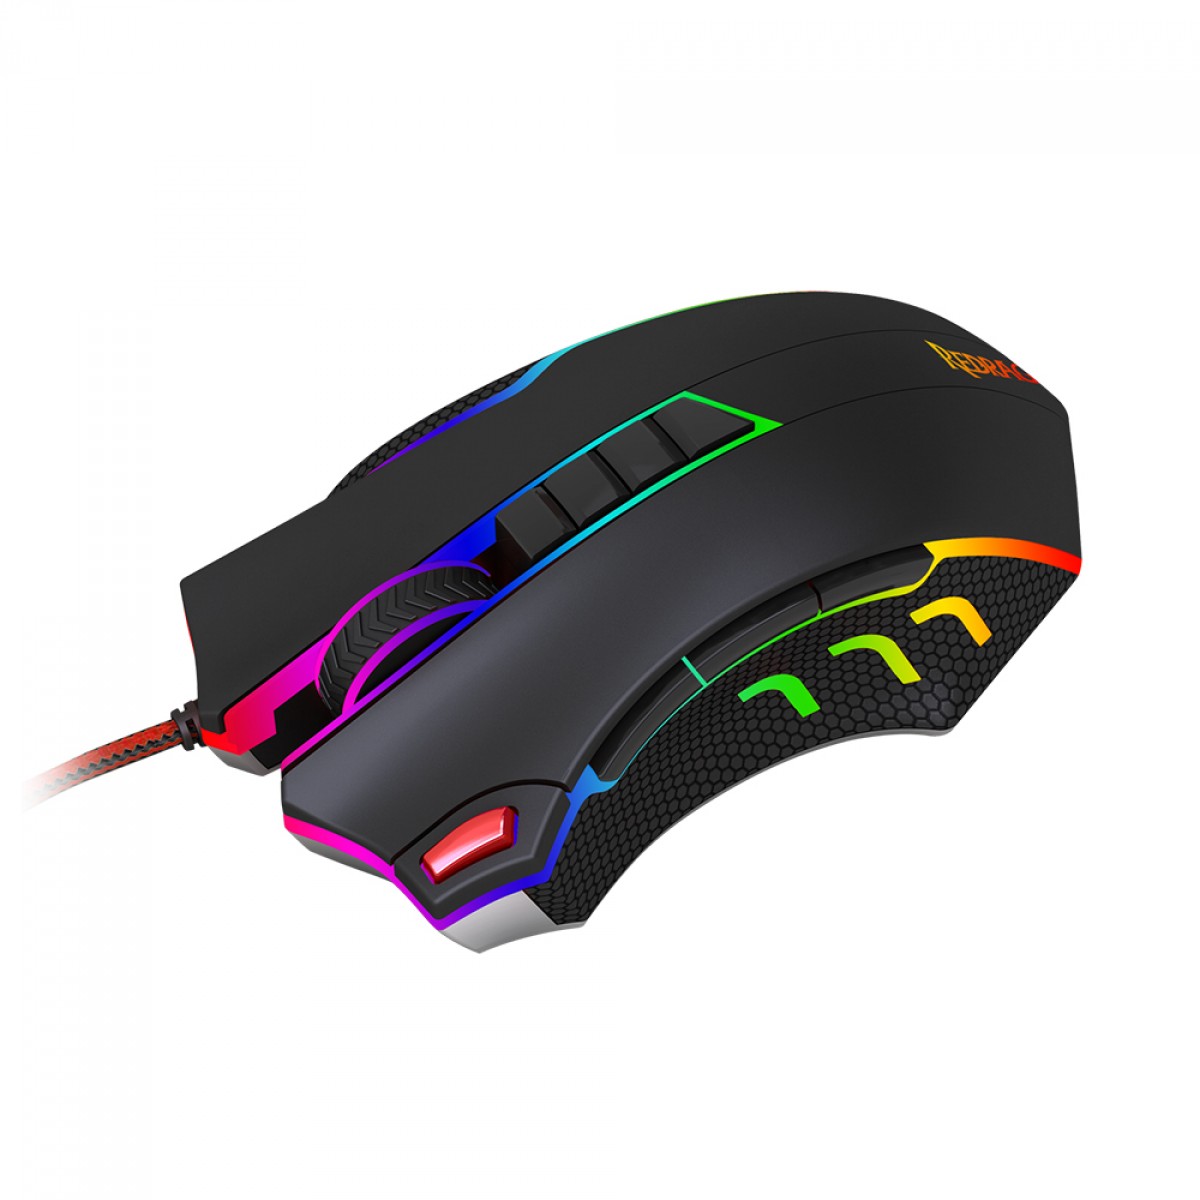 Mouse Gamer Redragon Titanoboa 2 Chroma, RGB, 24000 DPI, 10 Botões, Black, M802-RGB-1